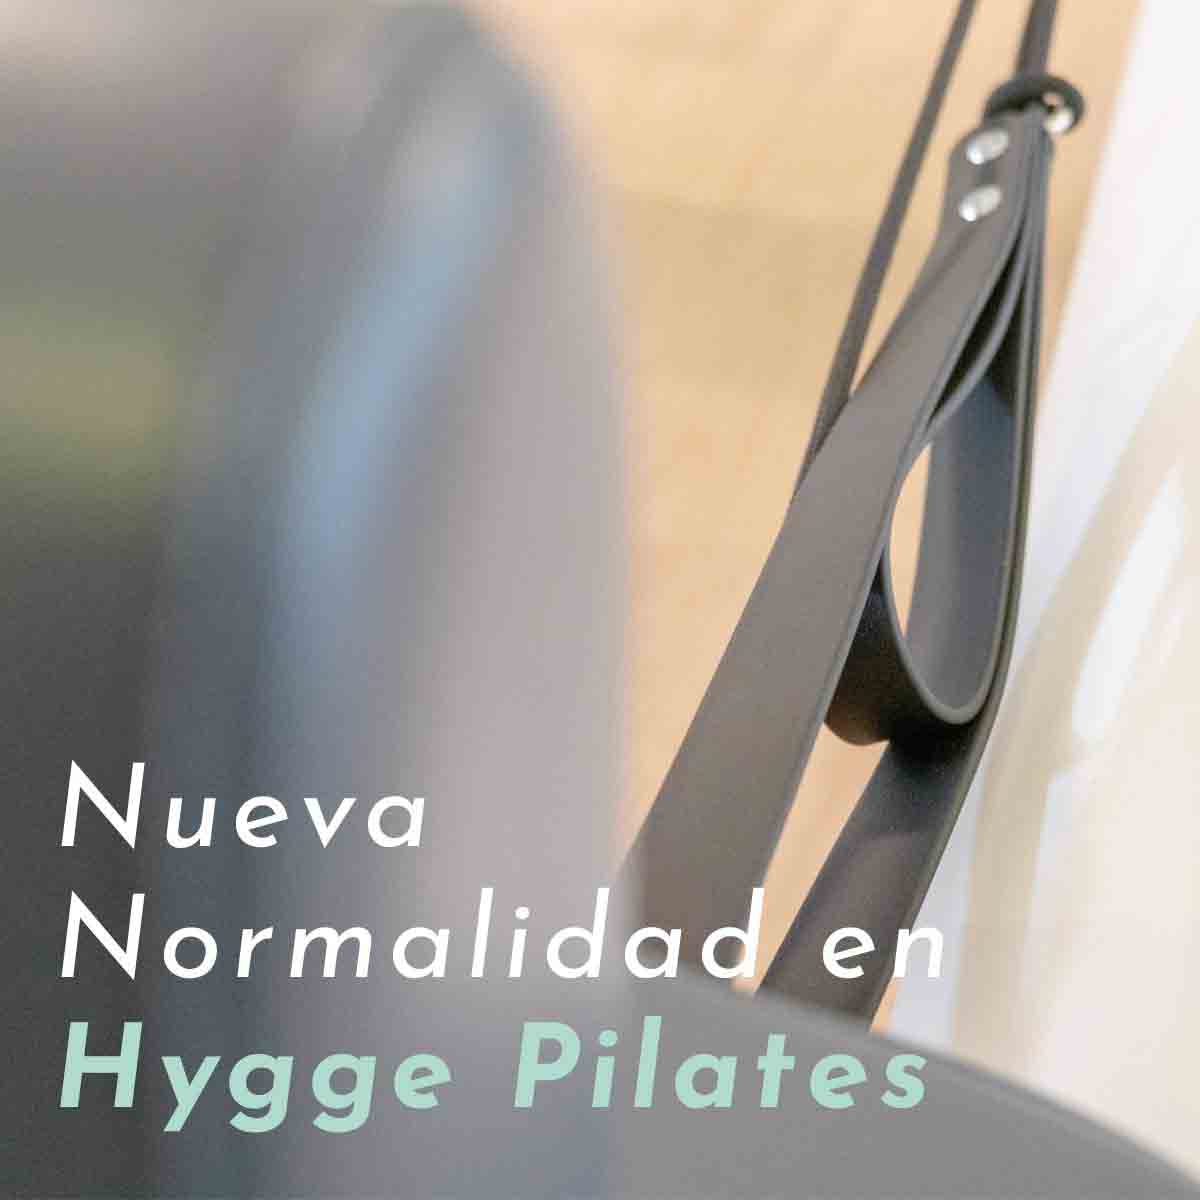 Pilates nueva normalidad covid-19